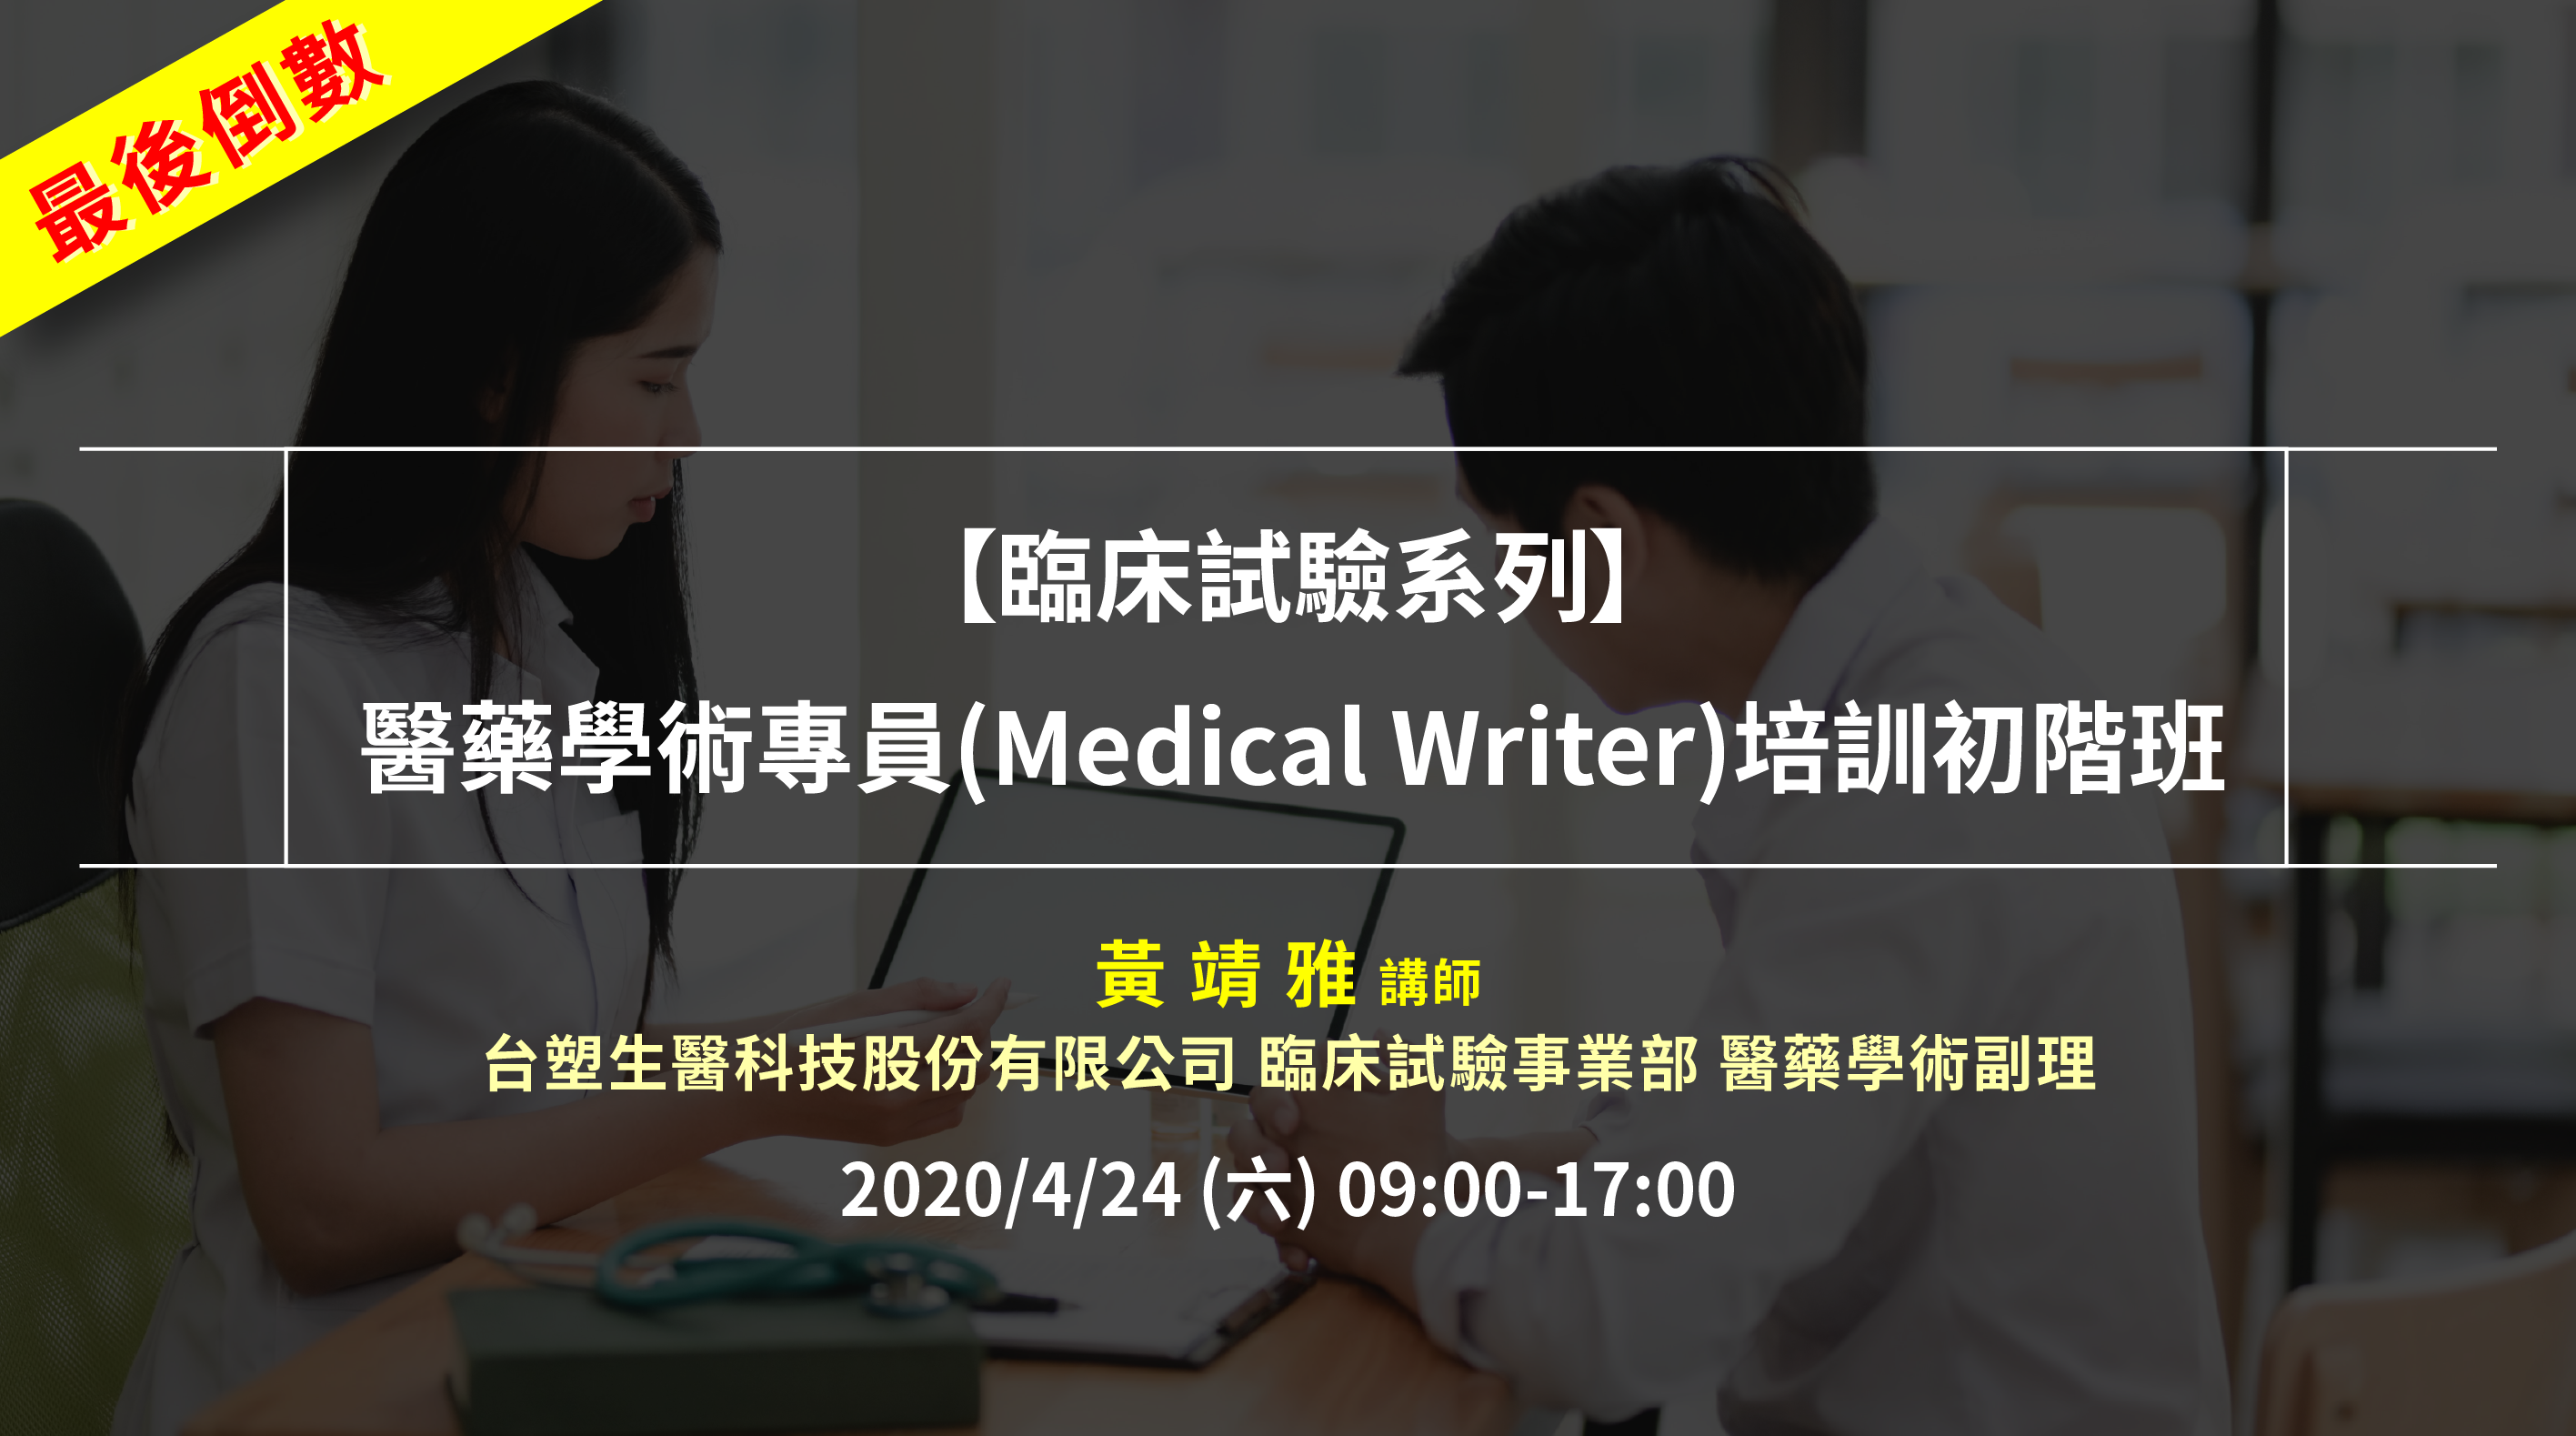 <已截止>2021/04/24(六)<br>【臨床試驗系列】醫藥學術專員(Medical Writer)培訓初階班